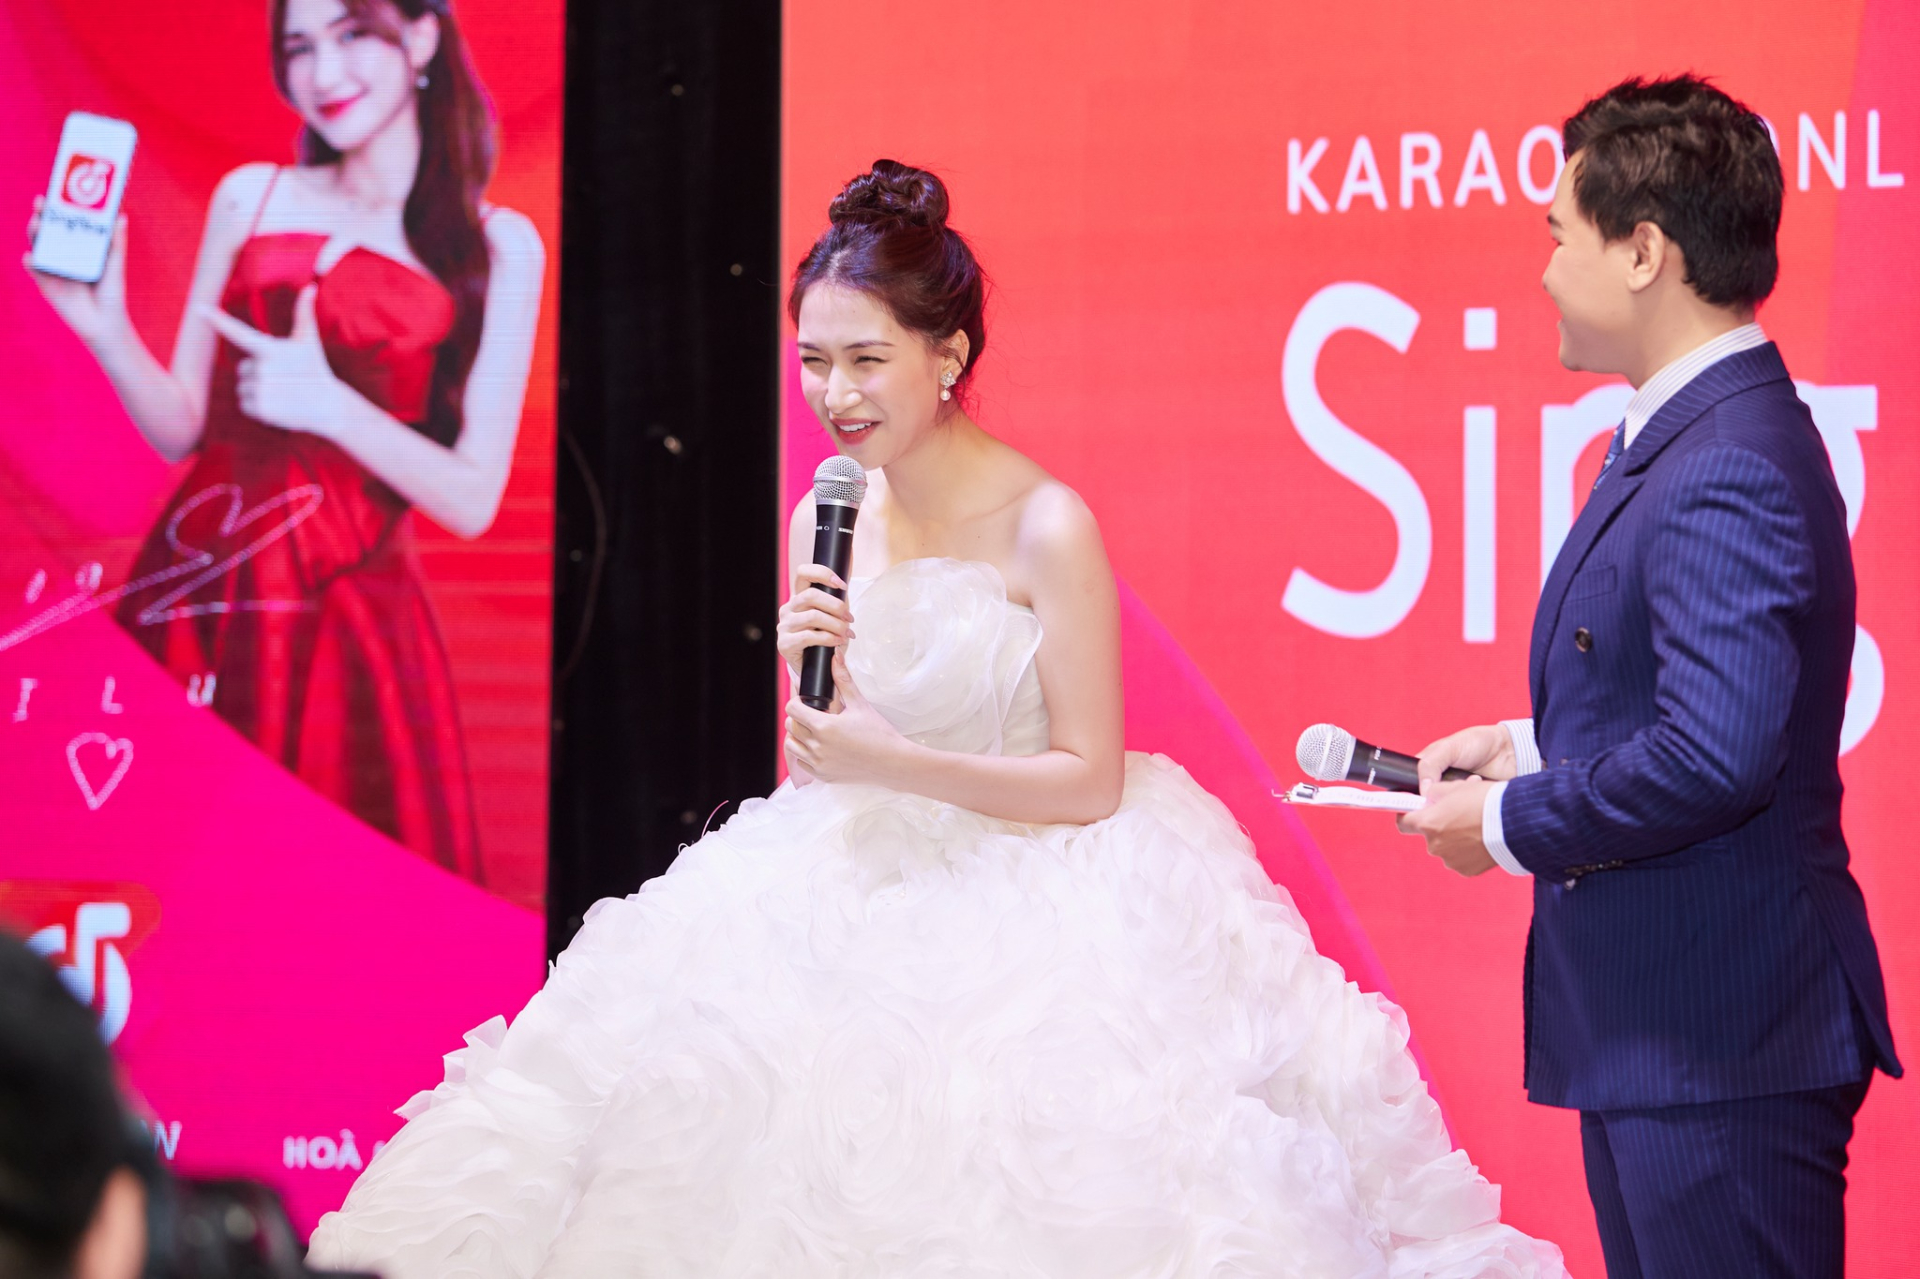 Chiếc đầm của Hòa Minzy được gắn rất nhiều đèn để nữ ca sĩ có thể 'phát sáng' trên sân khấu.